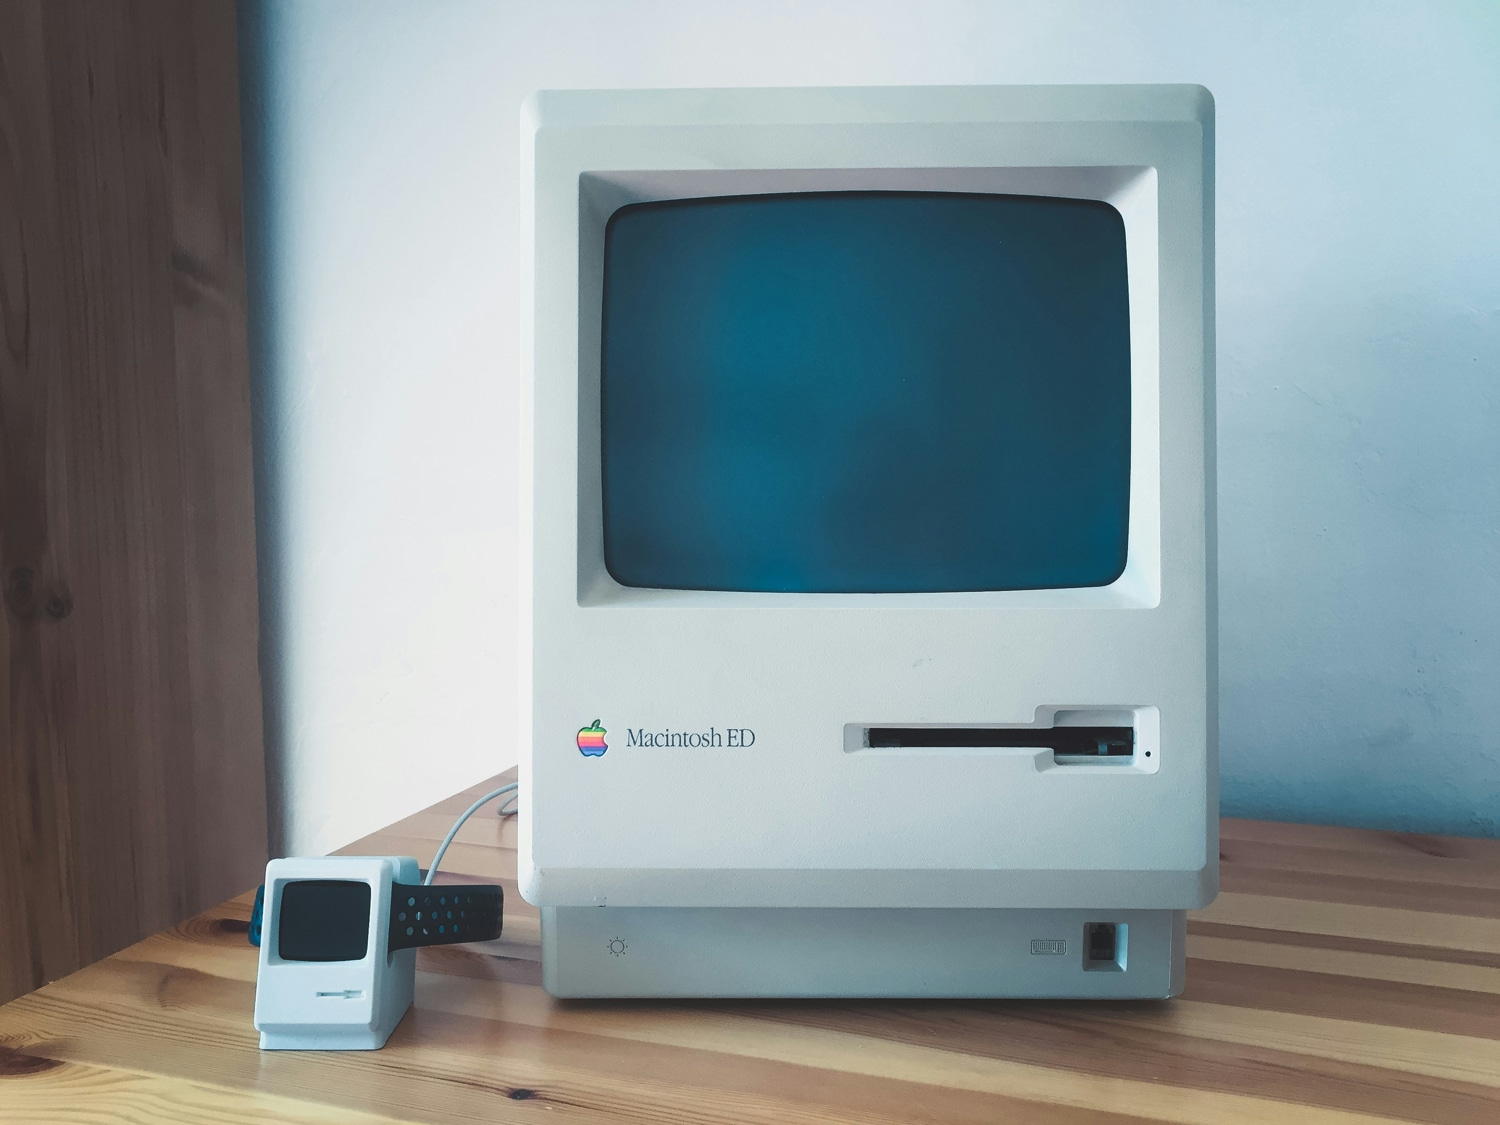 Un Apple Macintosh de 1984 sobre un escritorio, junto a un pequeño Macintosh como estación de carga del Apple Watch